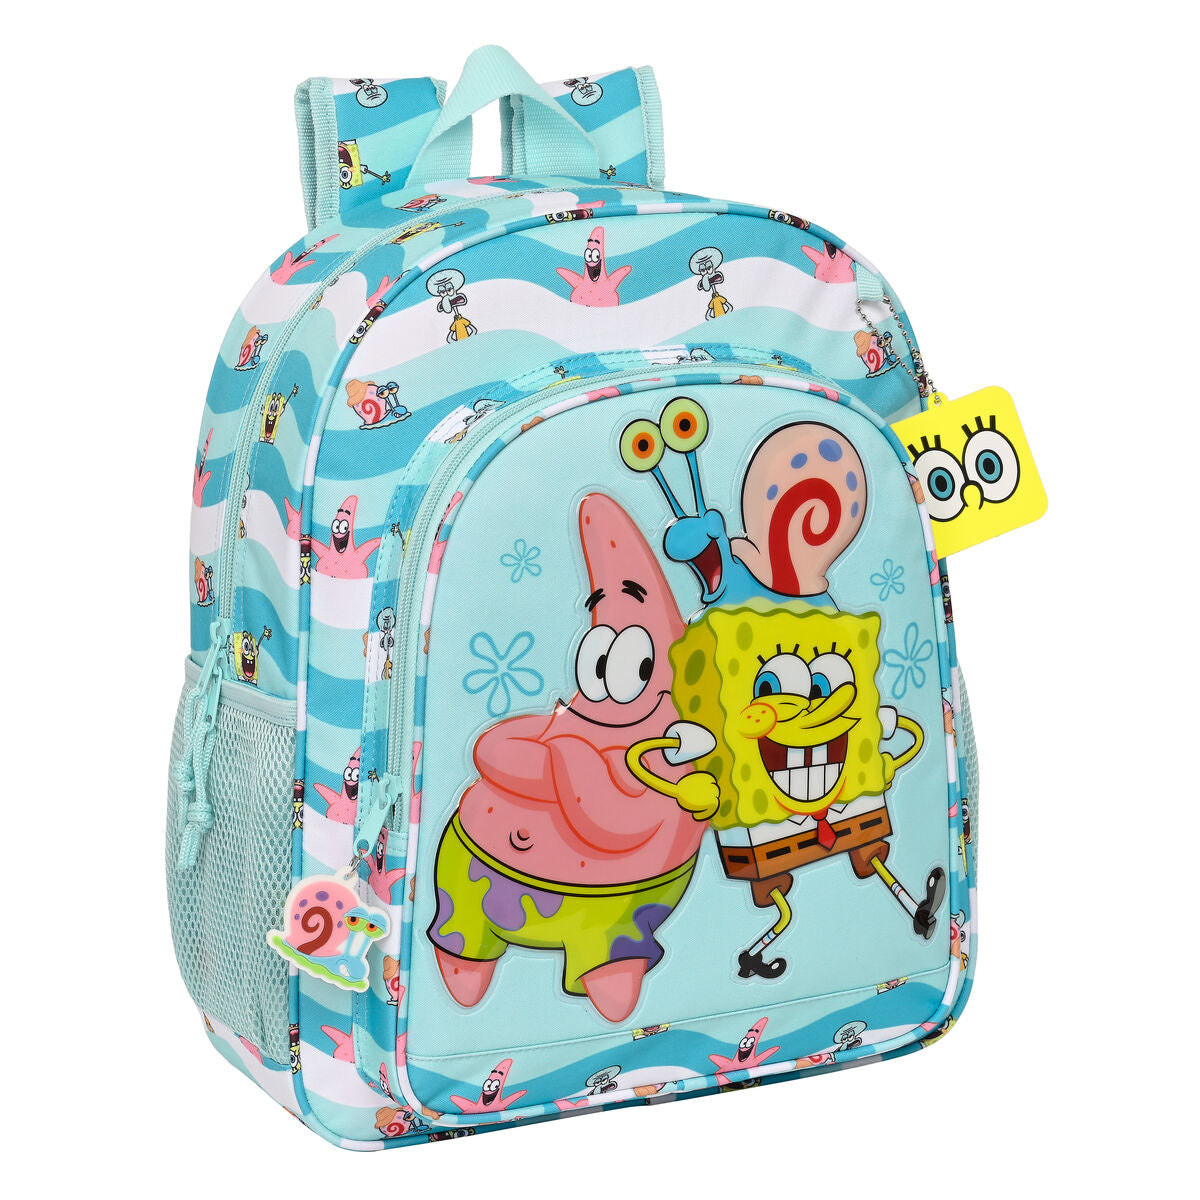 Schoolrugzak Spongebob Stay positive Blauw Wit (32 x 38 x 12 cm)